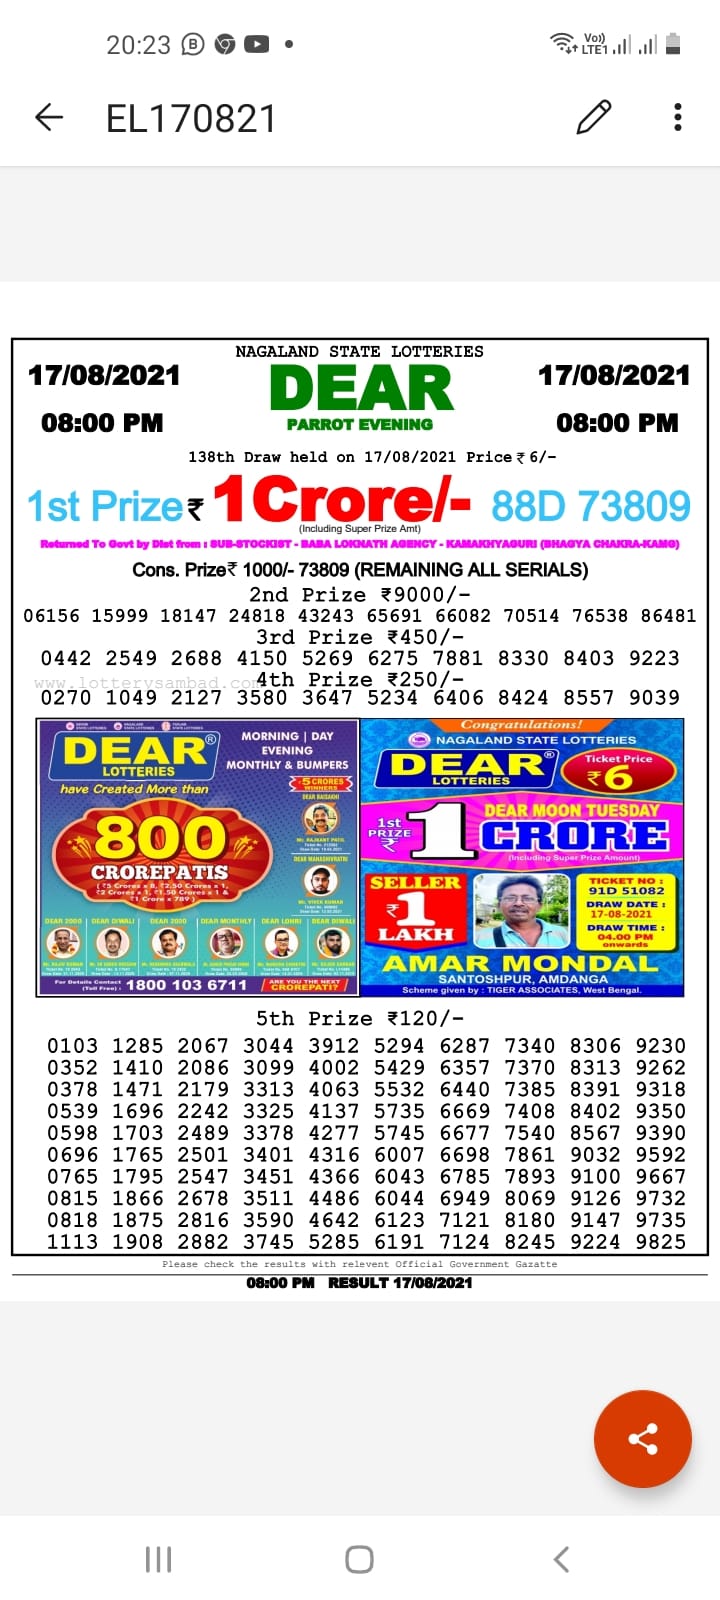 Dear lottery 08-00 pm 17-08-2021